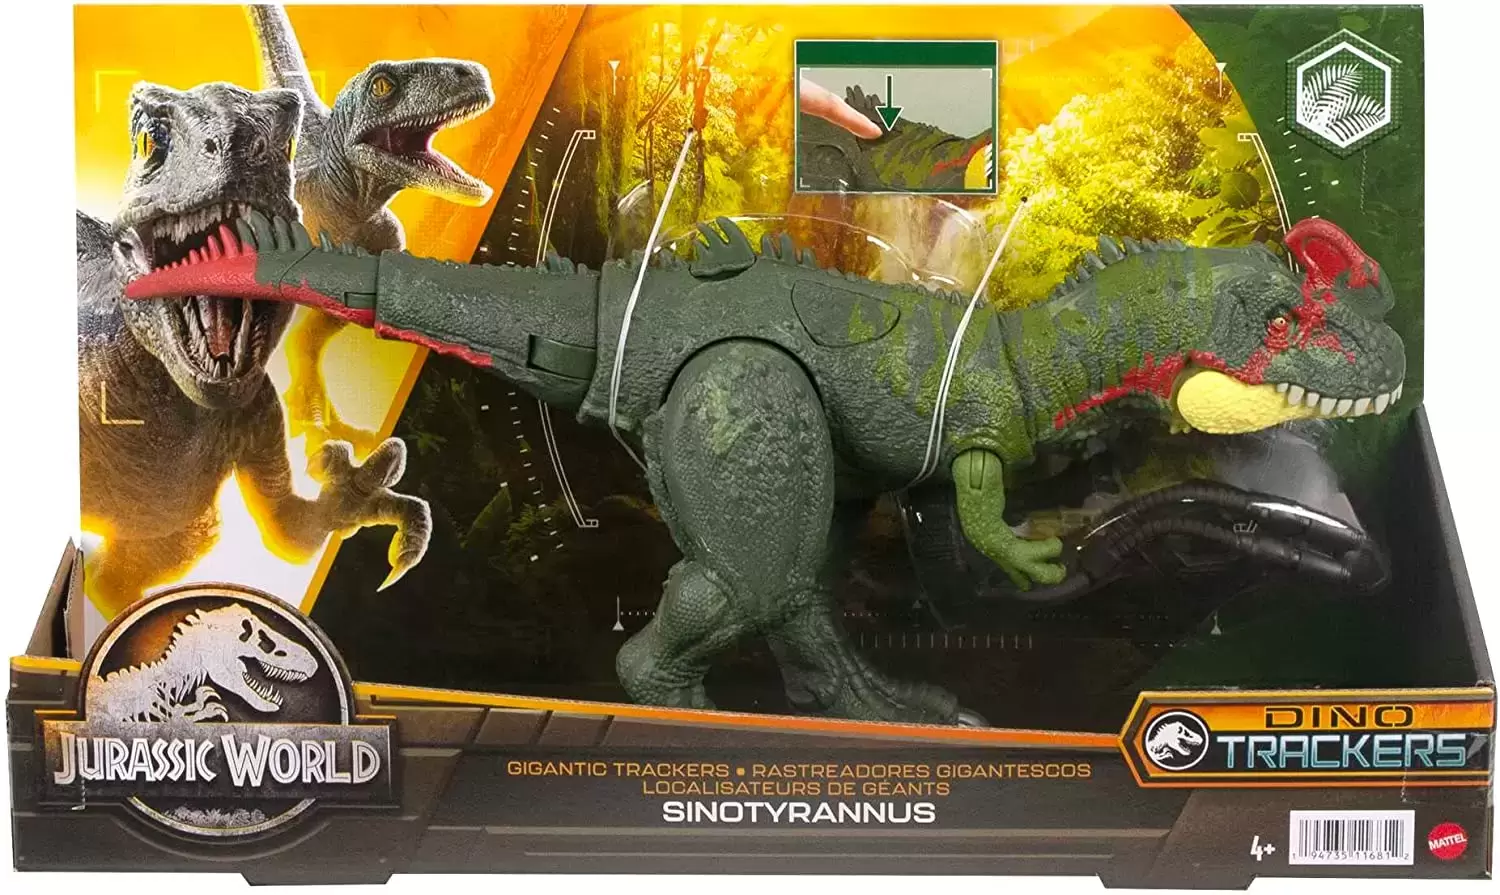 Jurassic World : Dino Trackers - Sinotyrannus - Gigantic Trackers